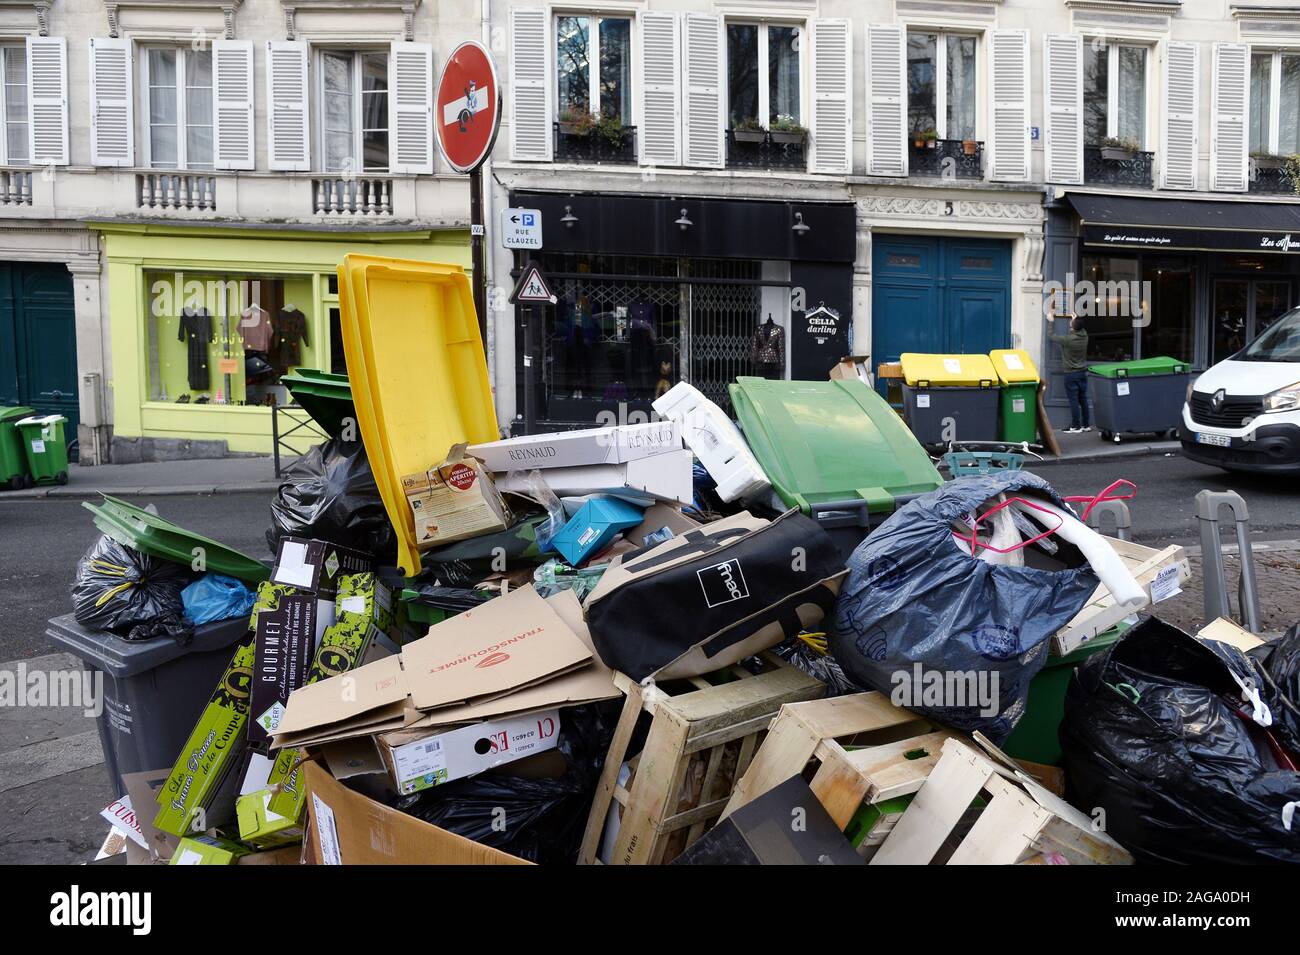 Paris poubelle Banque de photographies et d'images à haute résolution -  Alamy